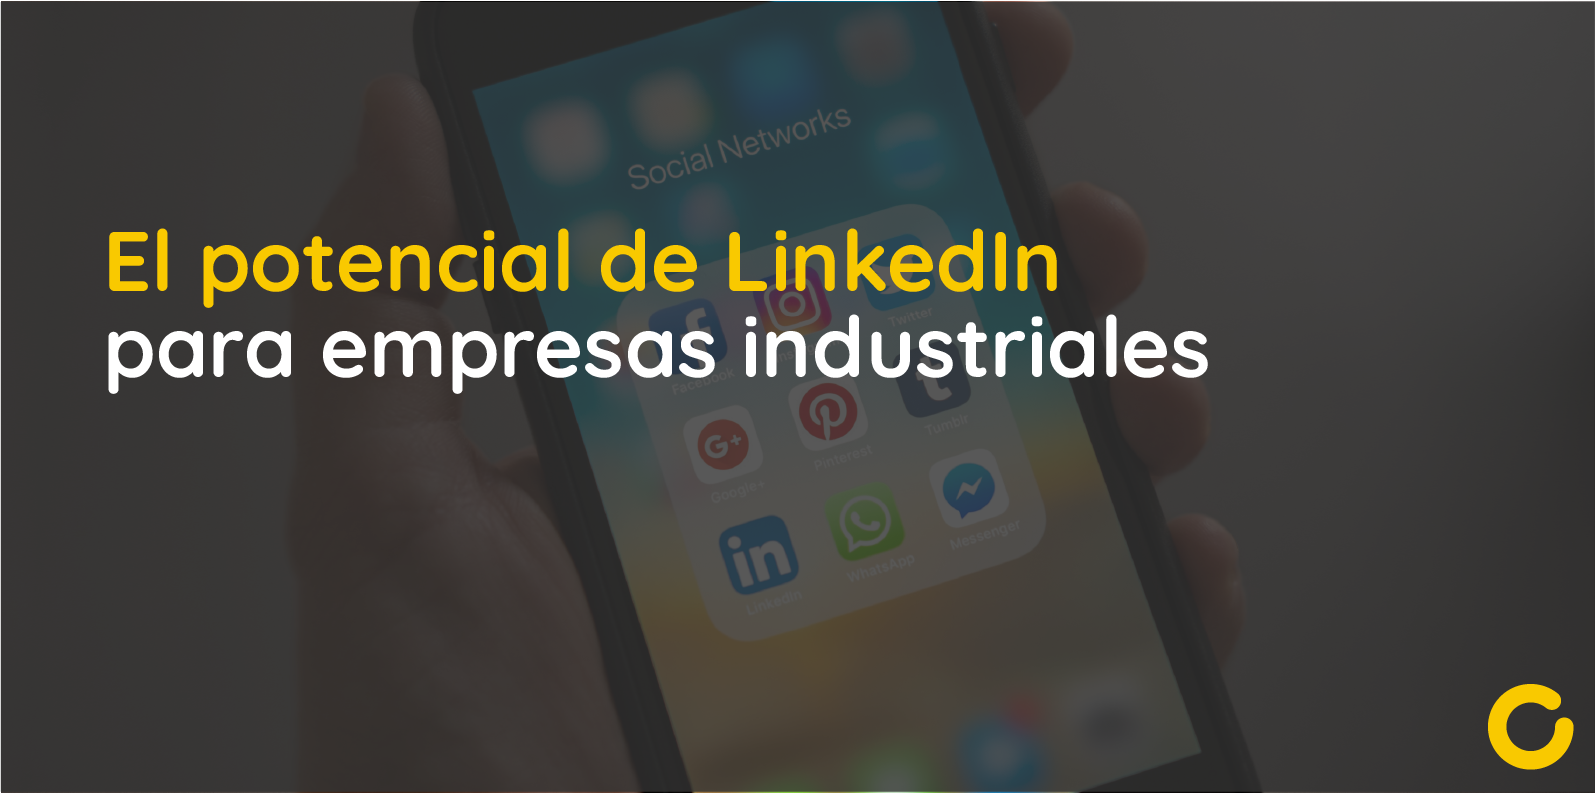 El potencial de LinkedIn para empresas industriales